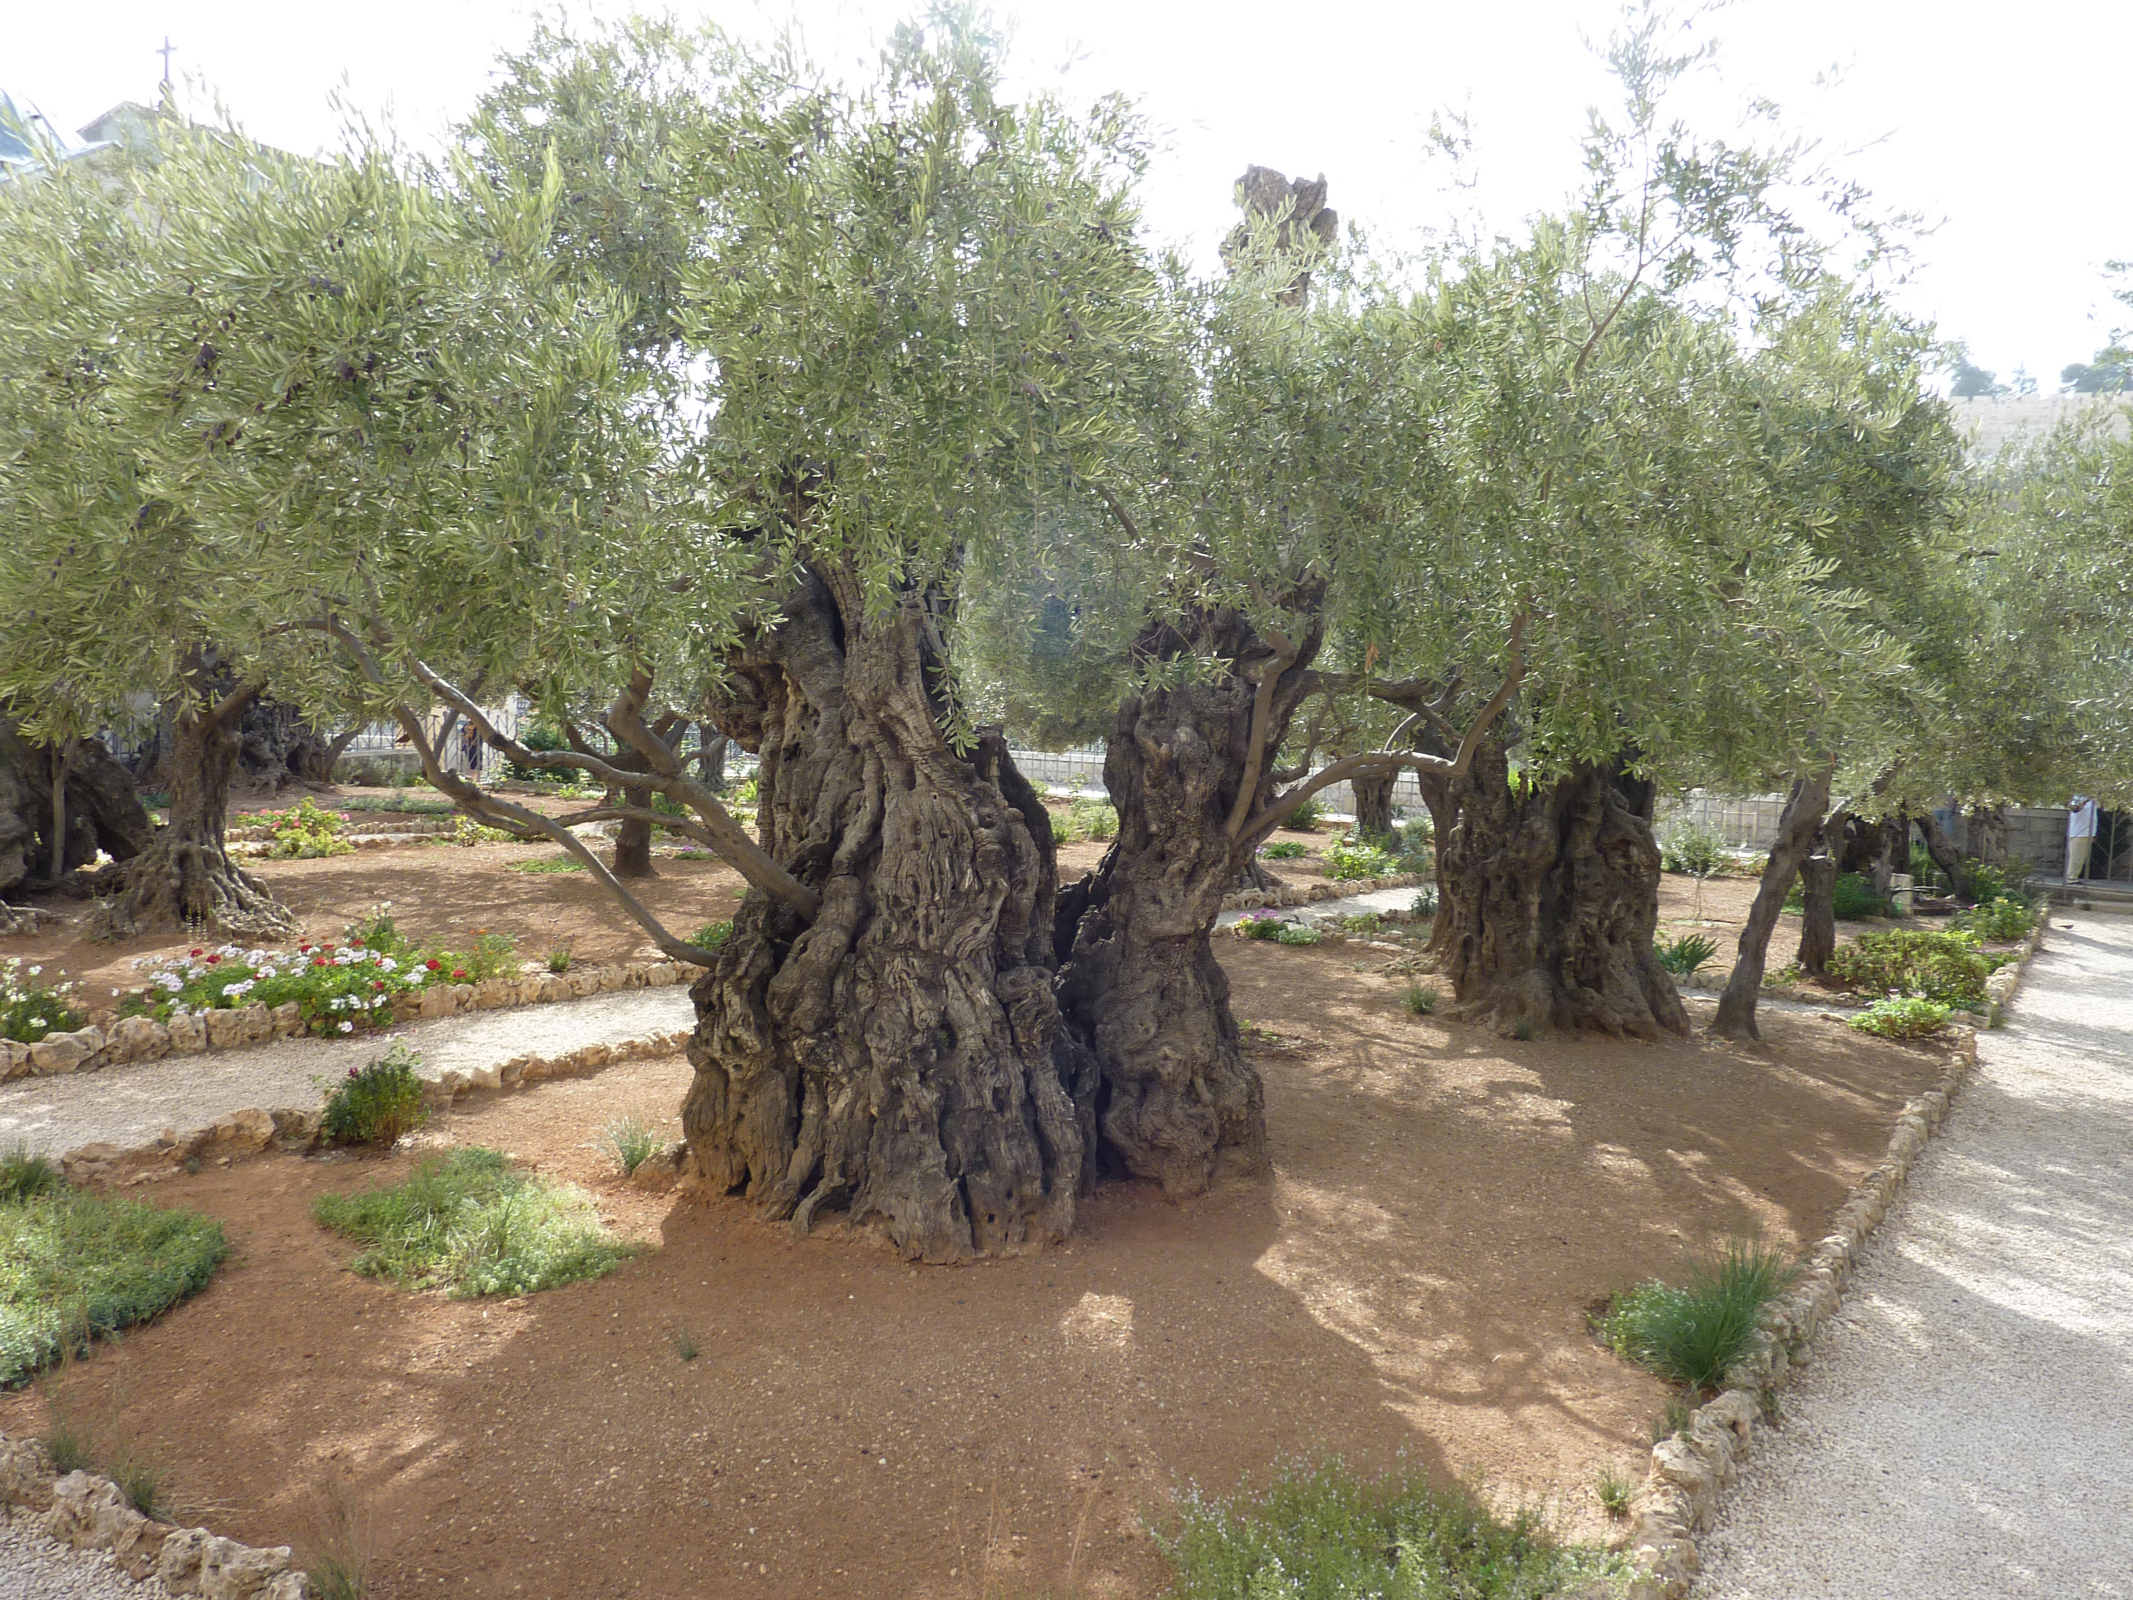 Garden Of Gethsemane